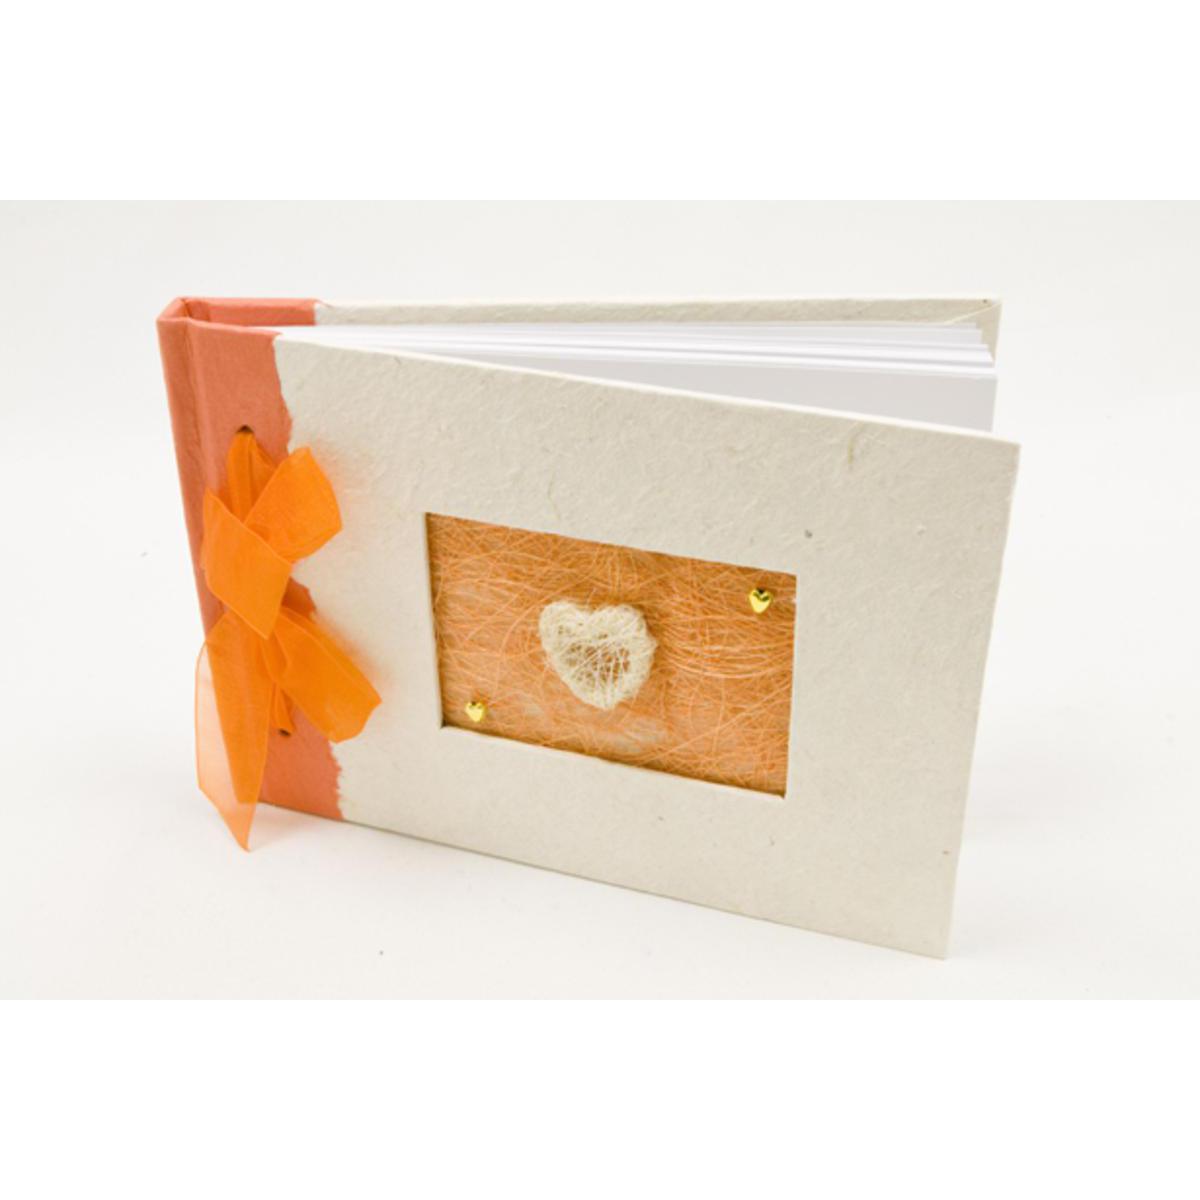 Livre d'or pour mariage forme Papillons - Papier et polyester - 21 x 15 cm - Orange